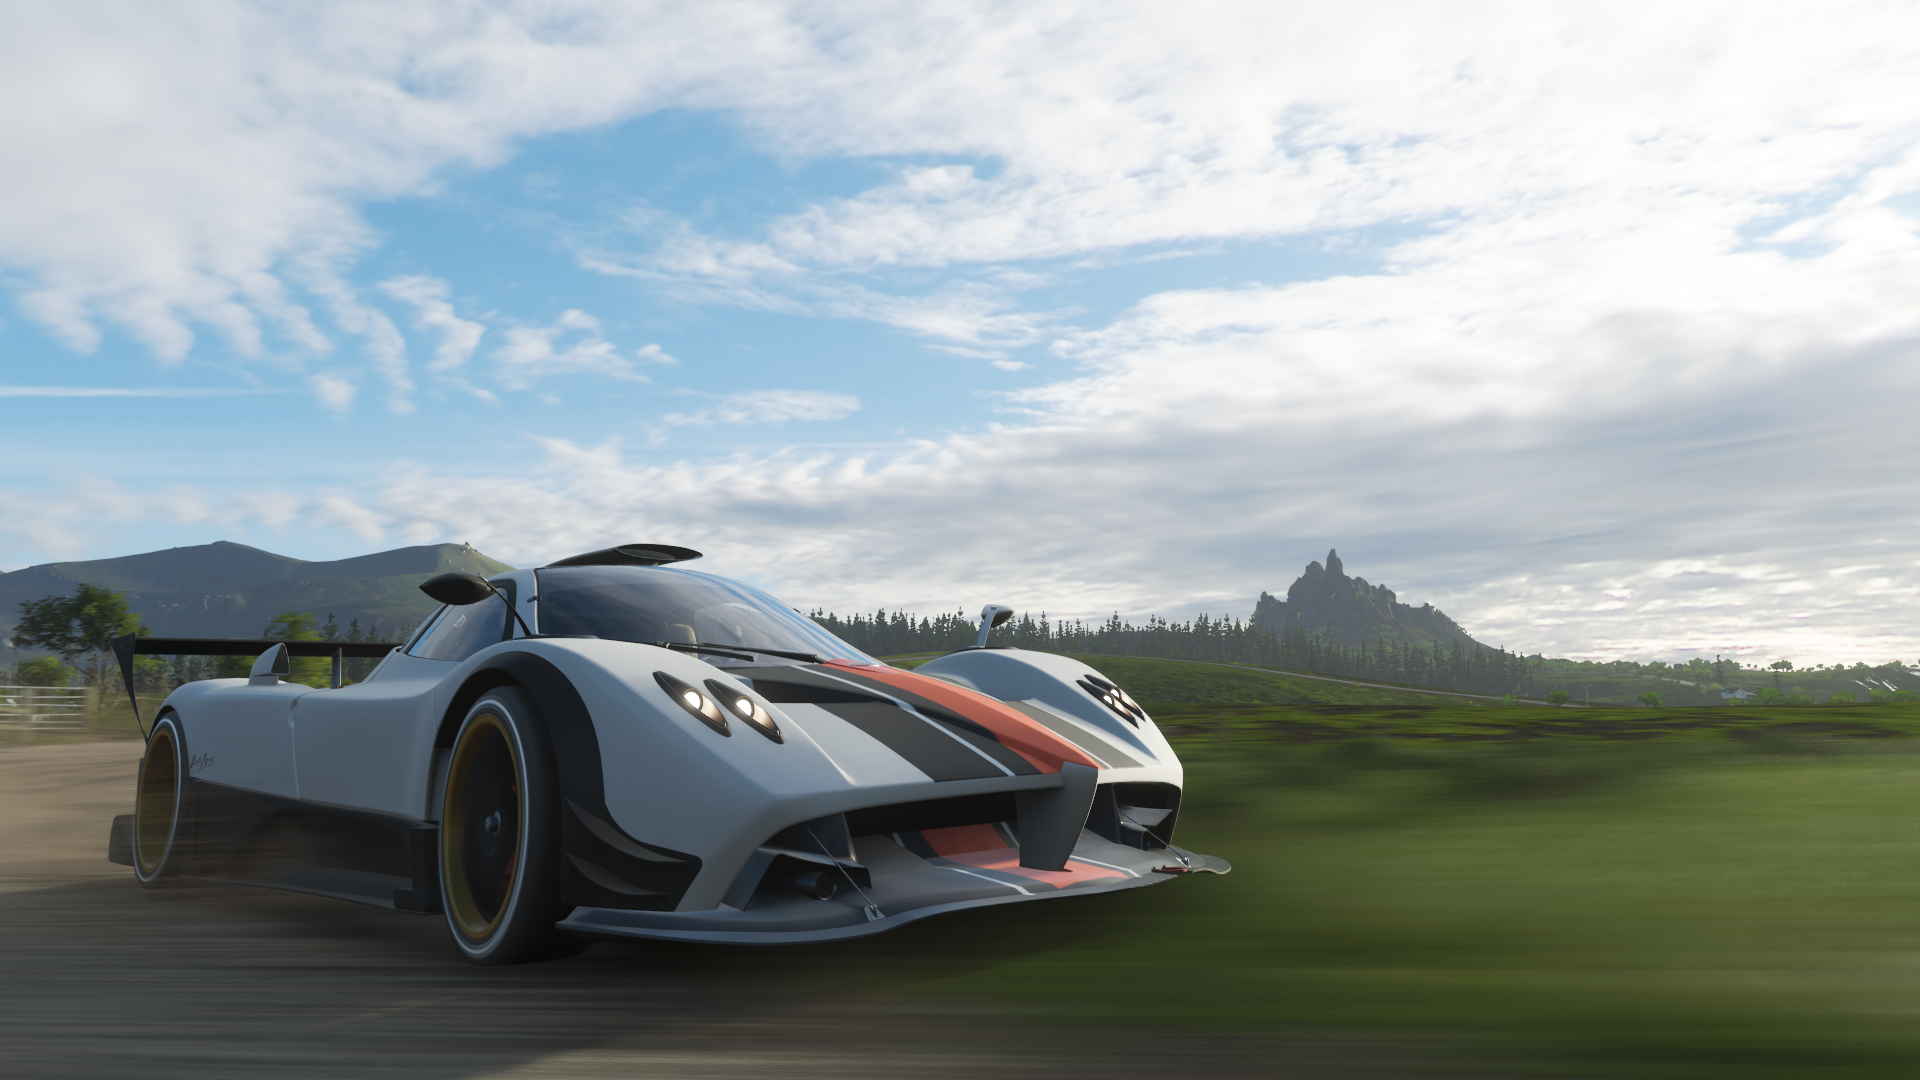 Forza Forza Horizon 4 Pagani Zonda Video Games Car Screen Shot 1920x1080